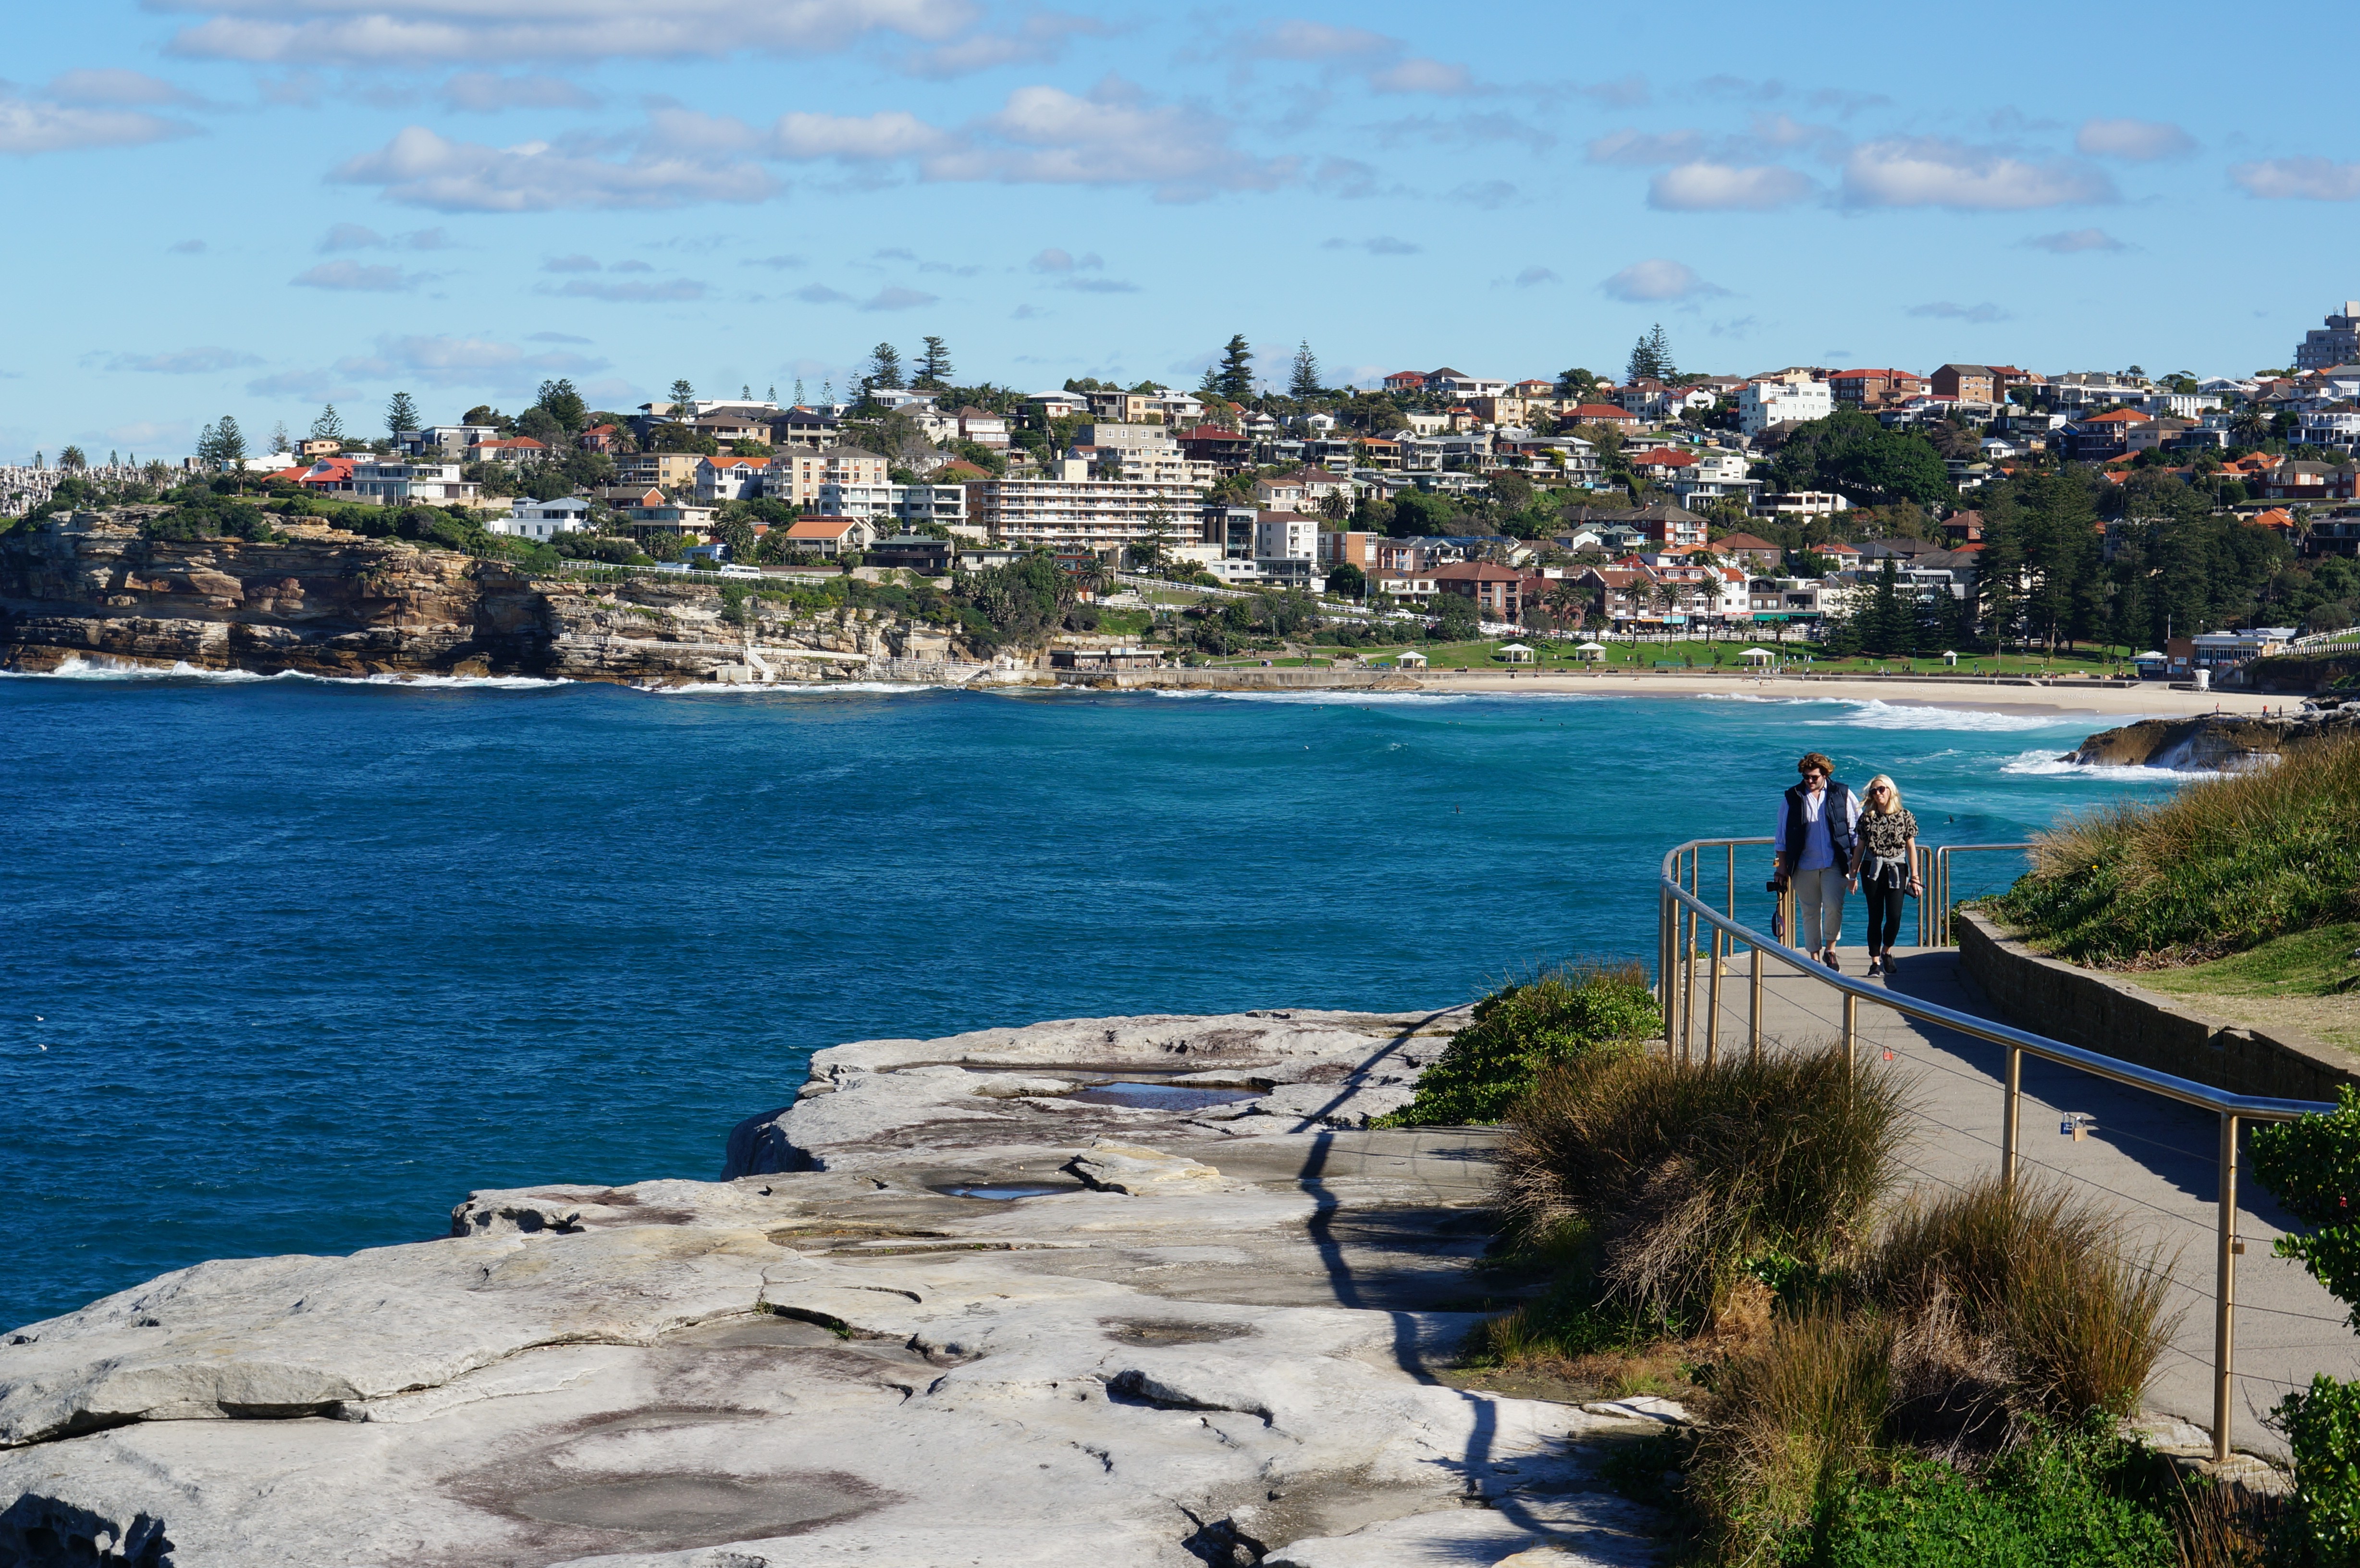 Las diez mejores cosas gratis para hacer en Sydney